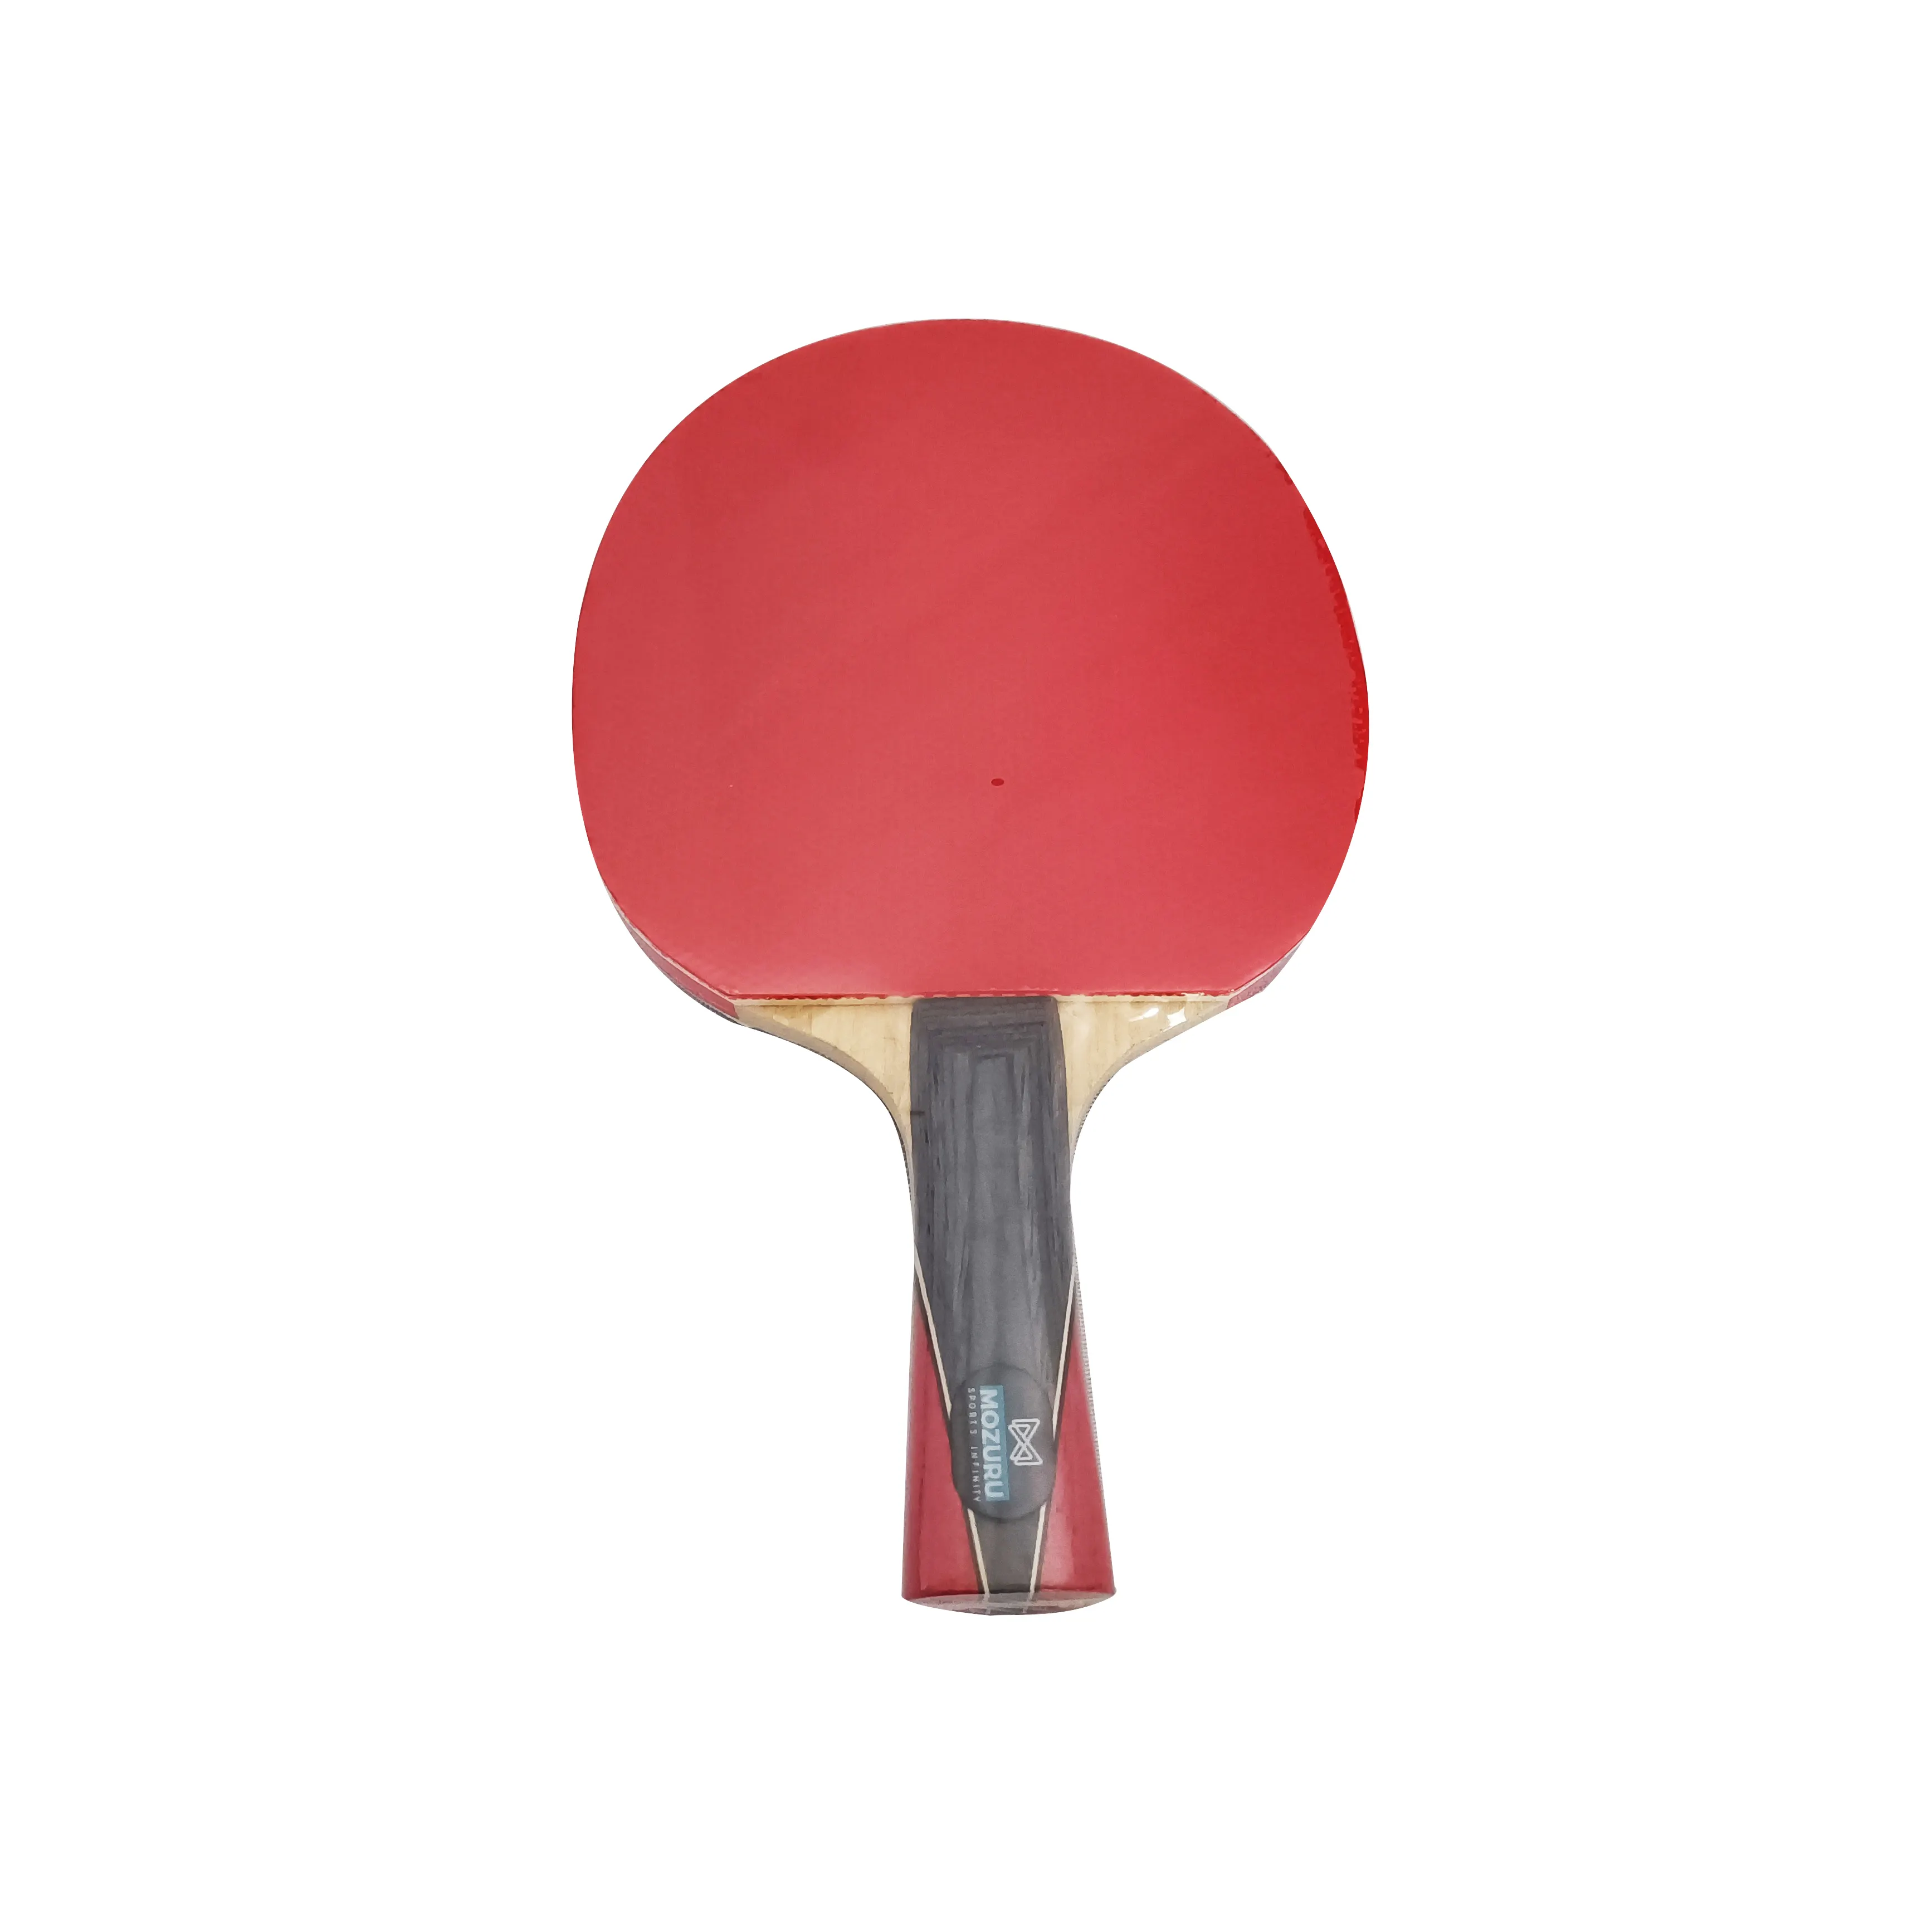 Hihg qualité ping-pong raquette penhold formation innovante raquette de tennis de table disponible pour tous les joueurs intermédiaires